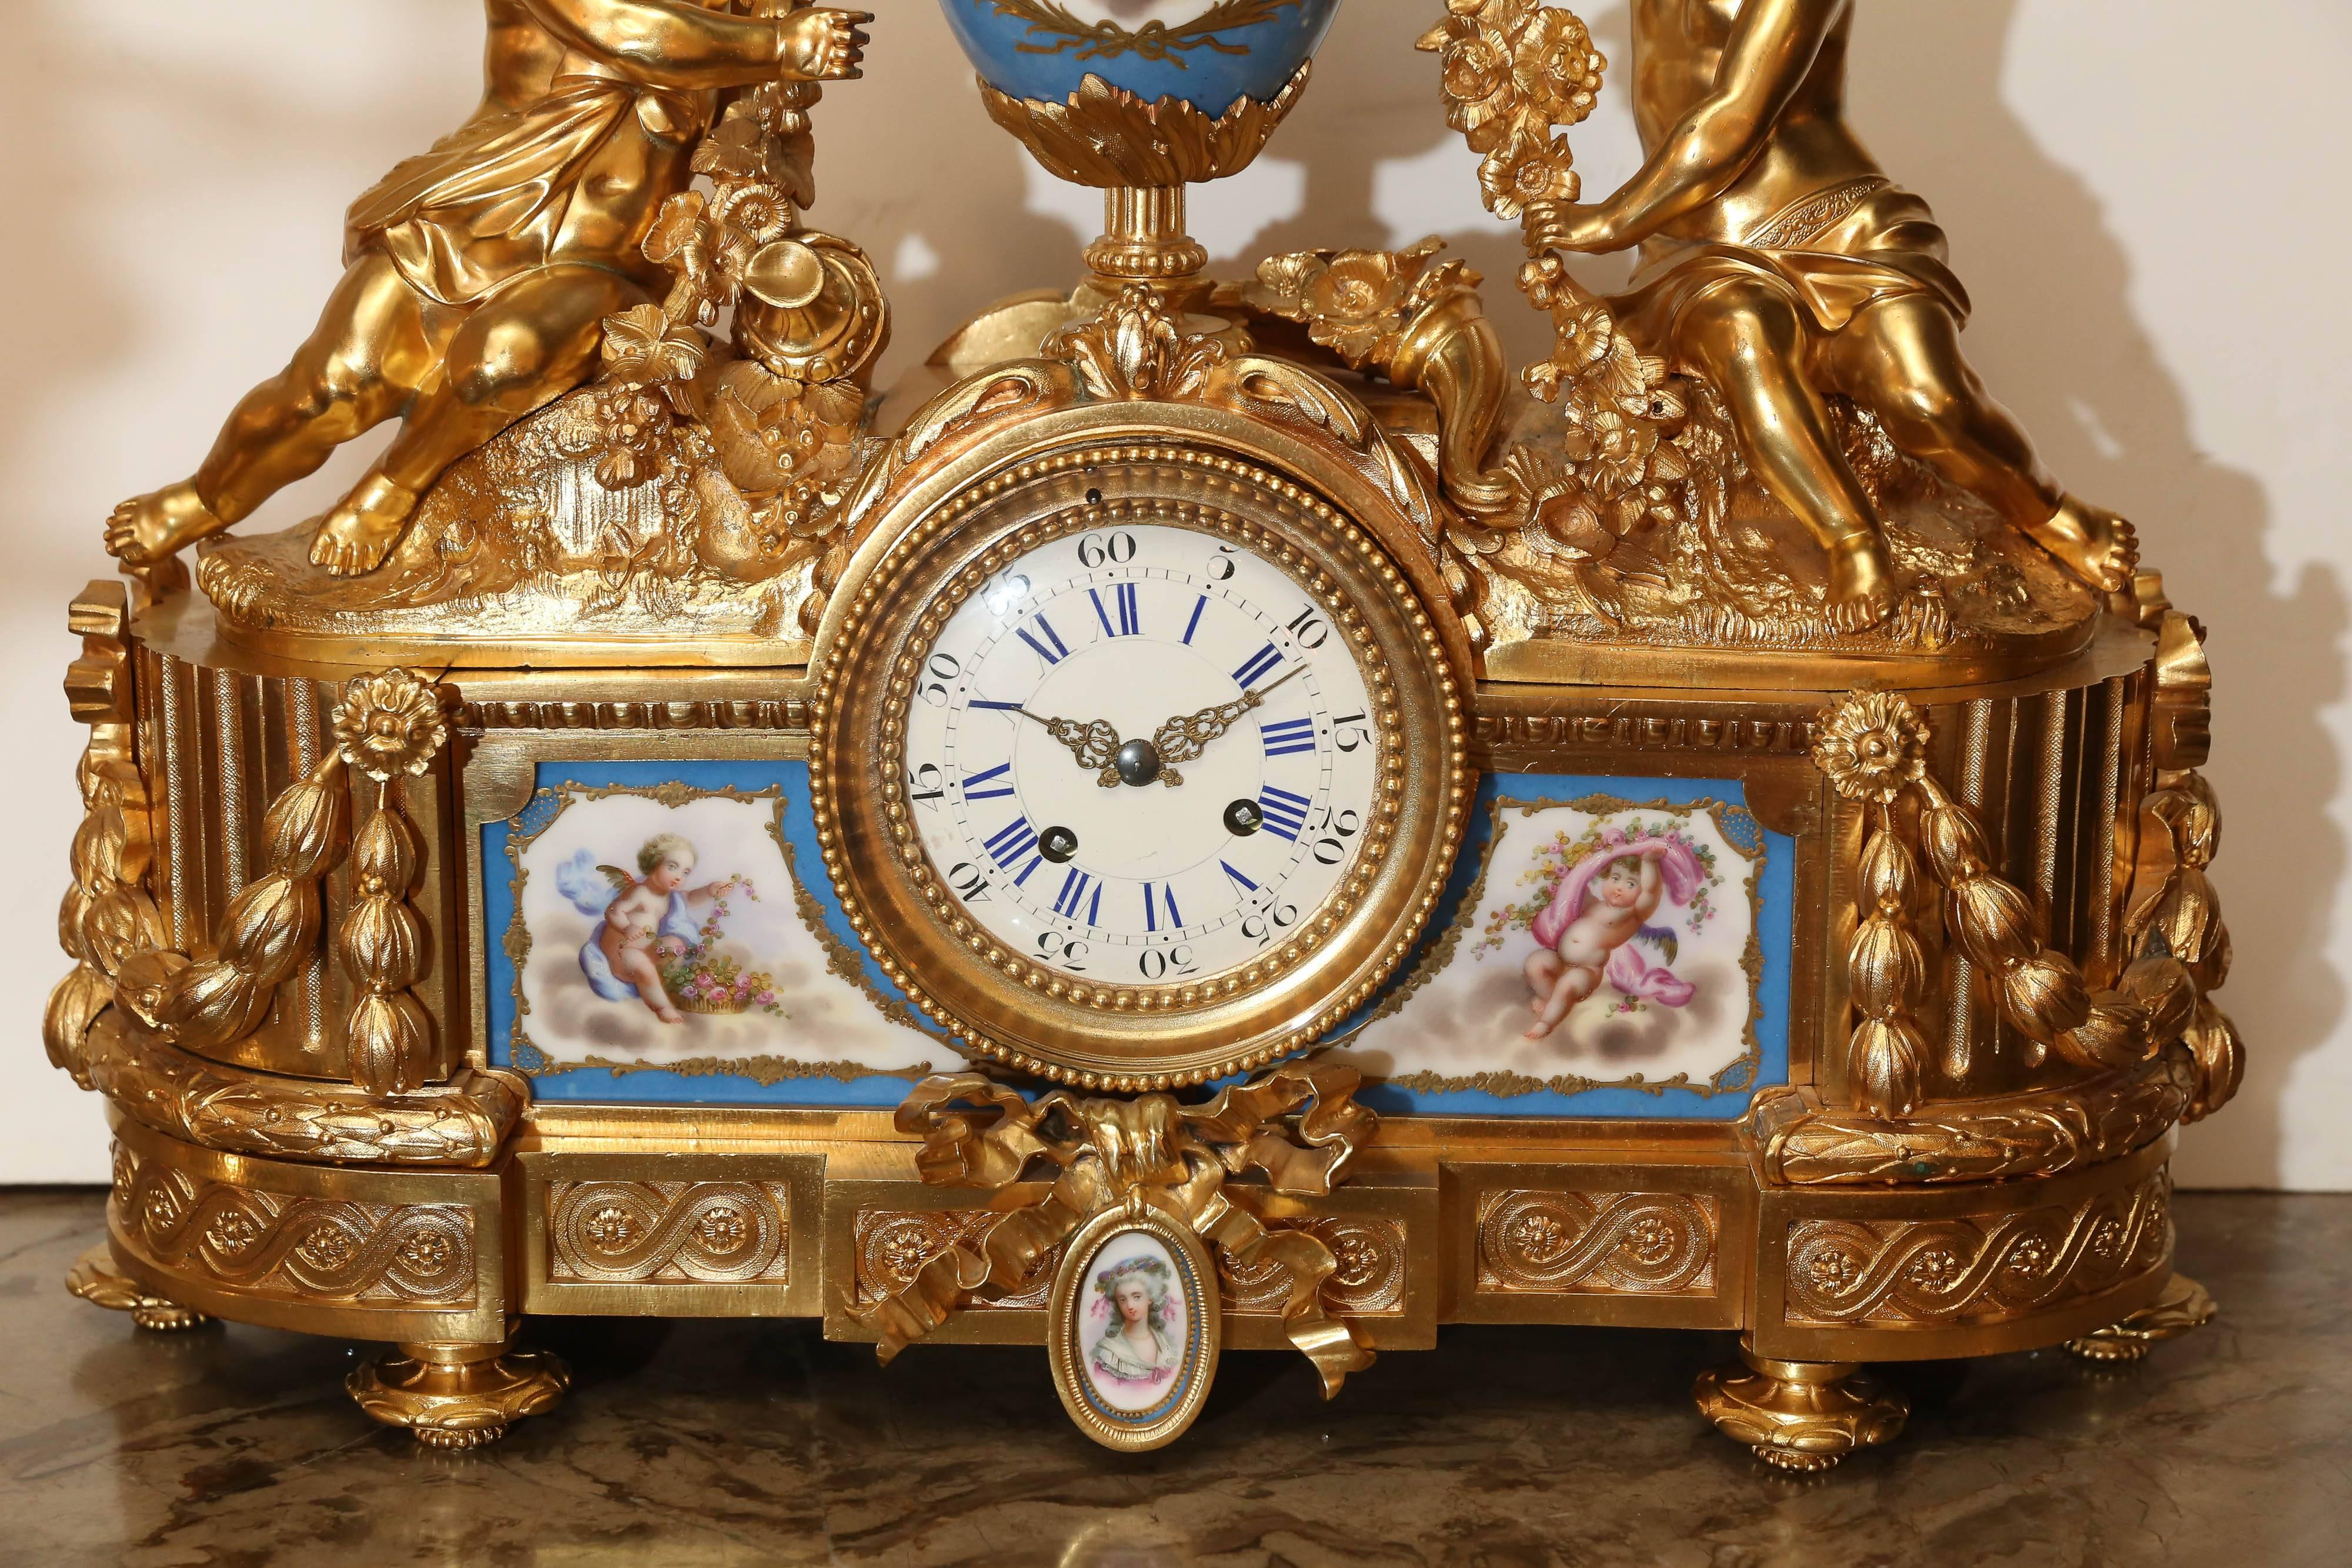 Grande et exquise horloge en bronze doré avec de grands putti tenant une guirlande
de fleurs sur une porcelaine peinte montée au-dessus d'une horloge française.